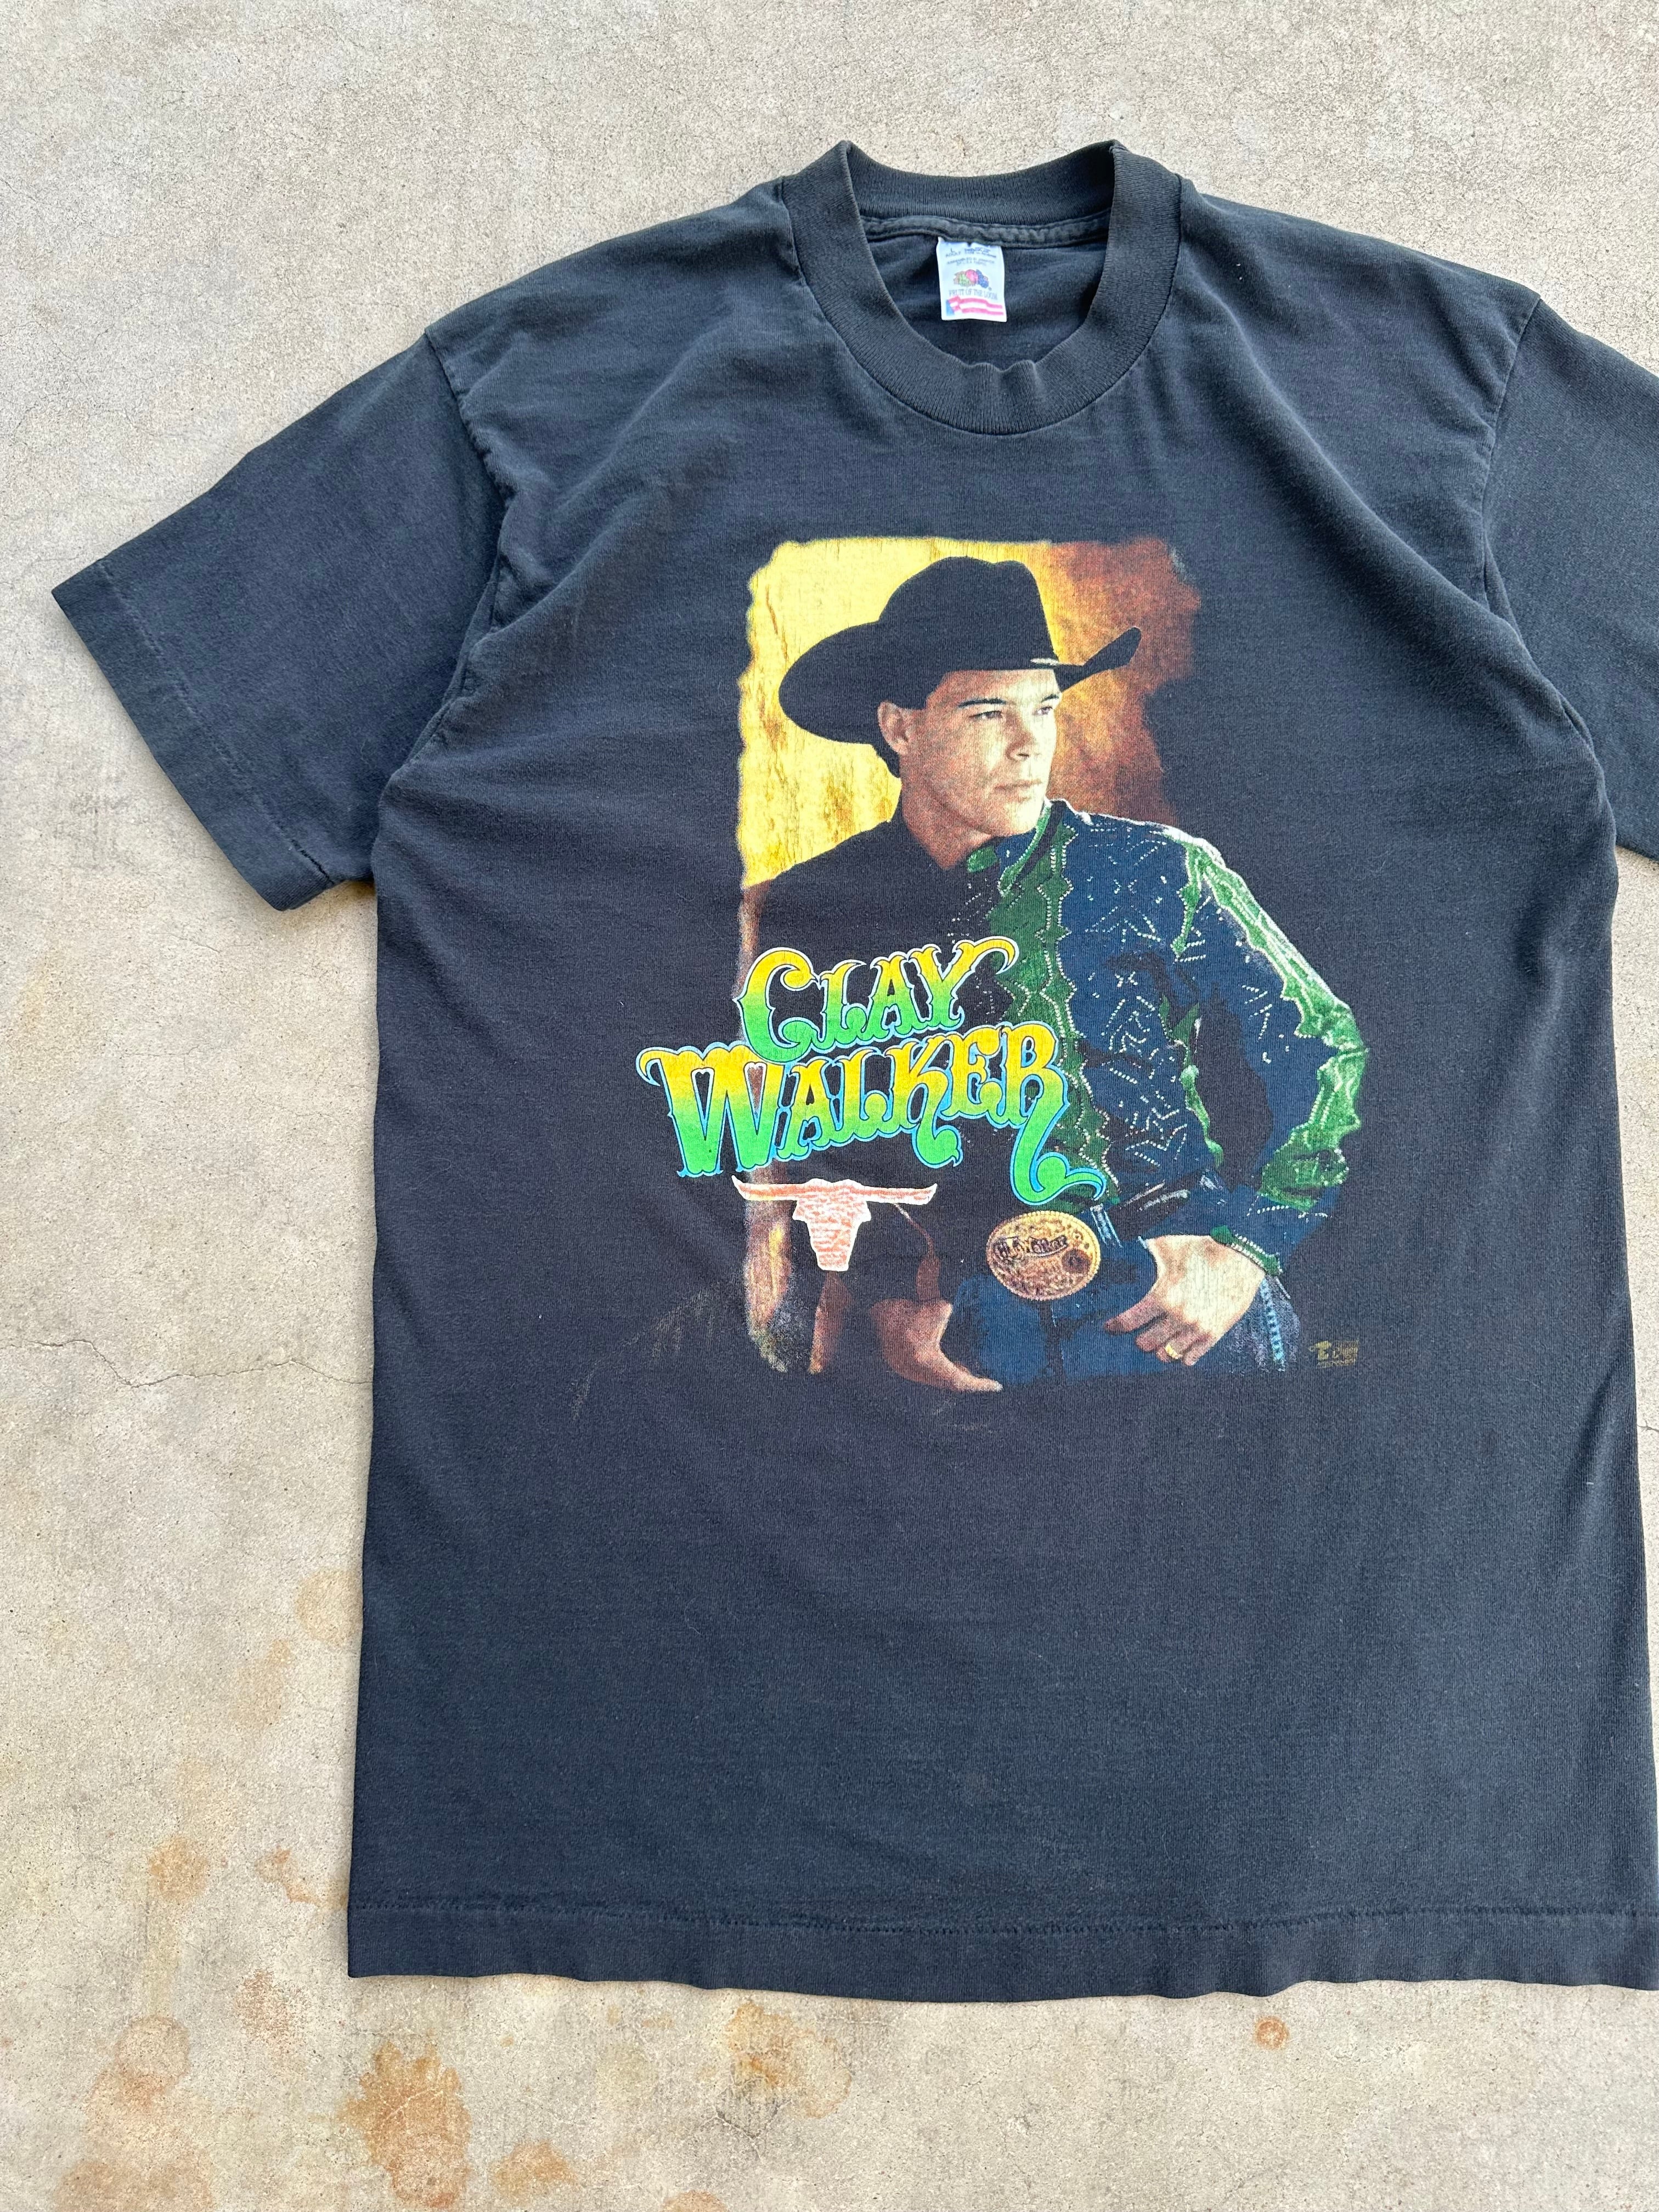 Vintage 1990’s Clay Walker Tour T-Shirt (M/L)